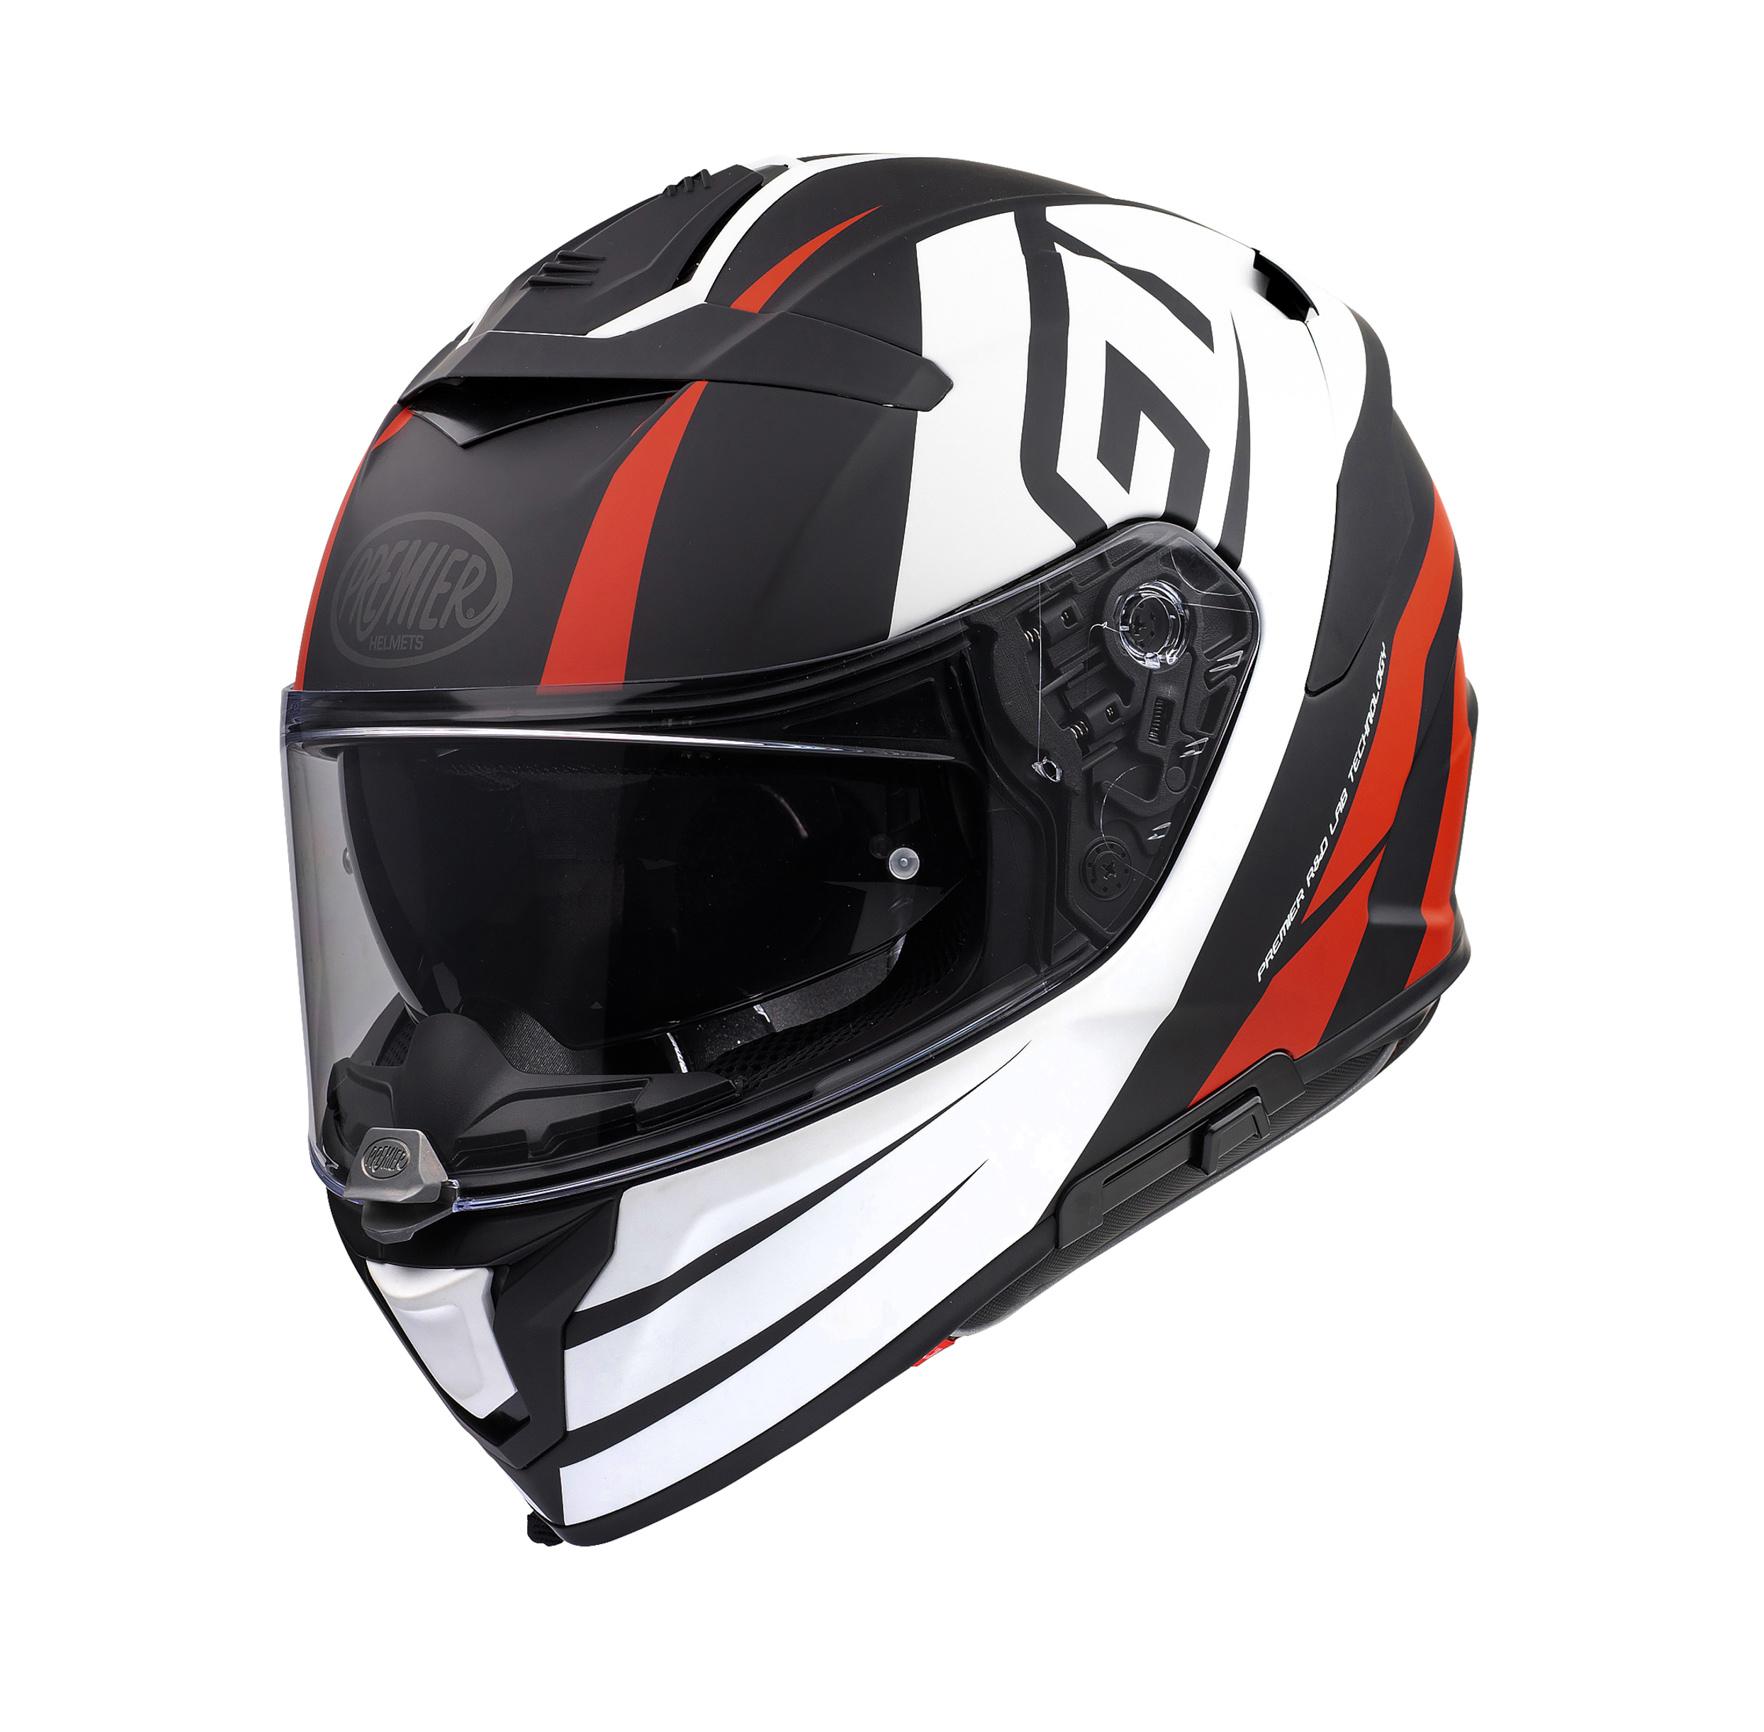 Premier Devil Gt Full Face Motorcycle Helmet - Black/White, S